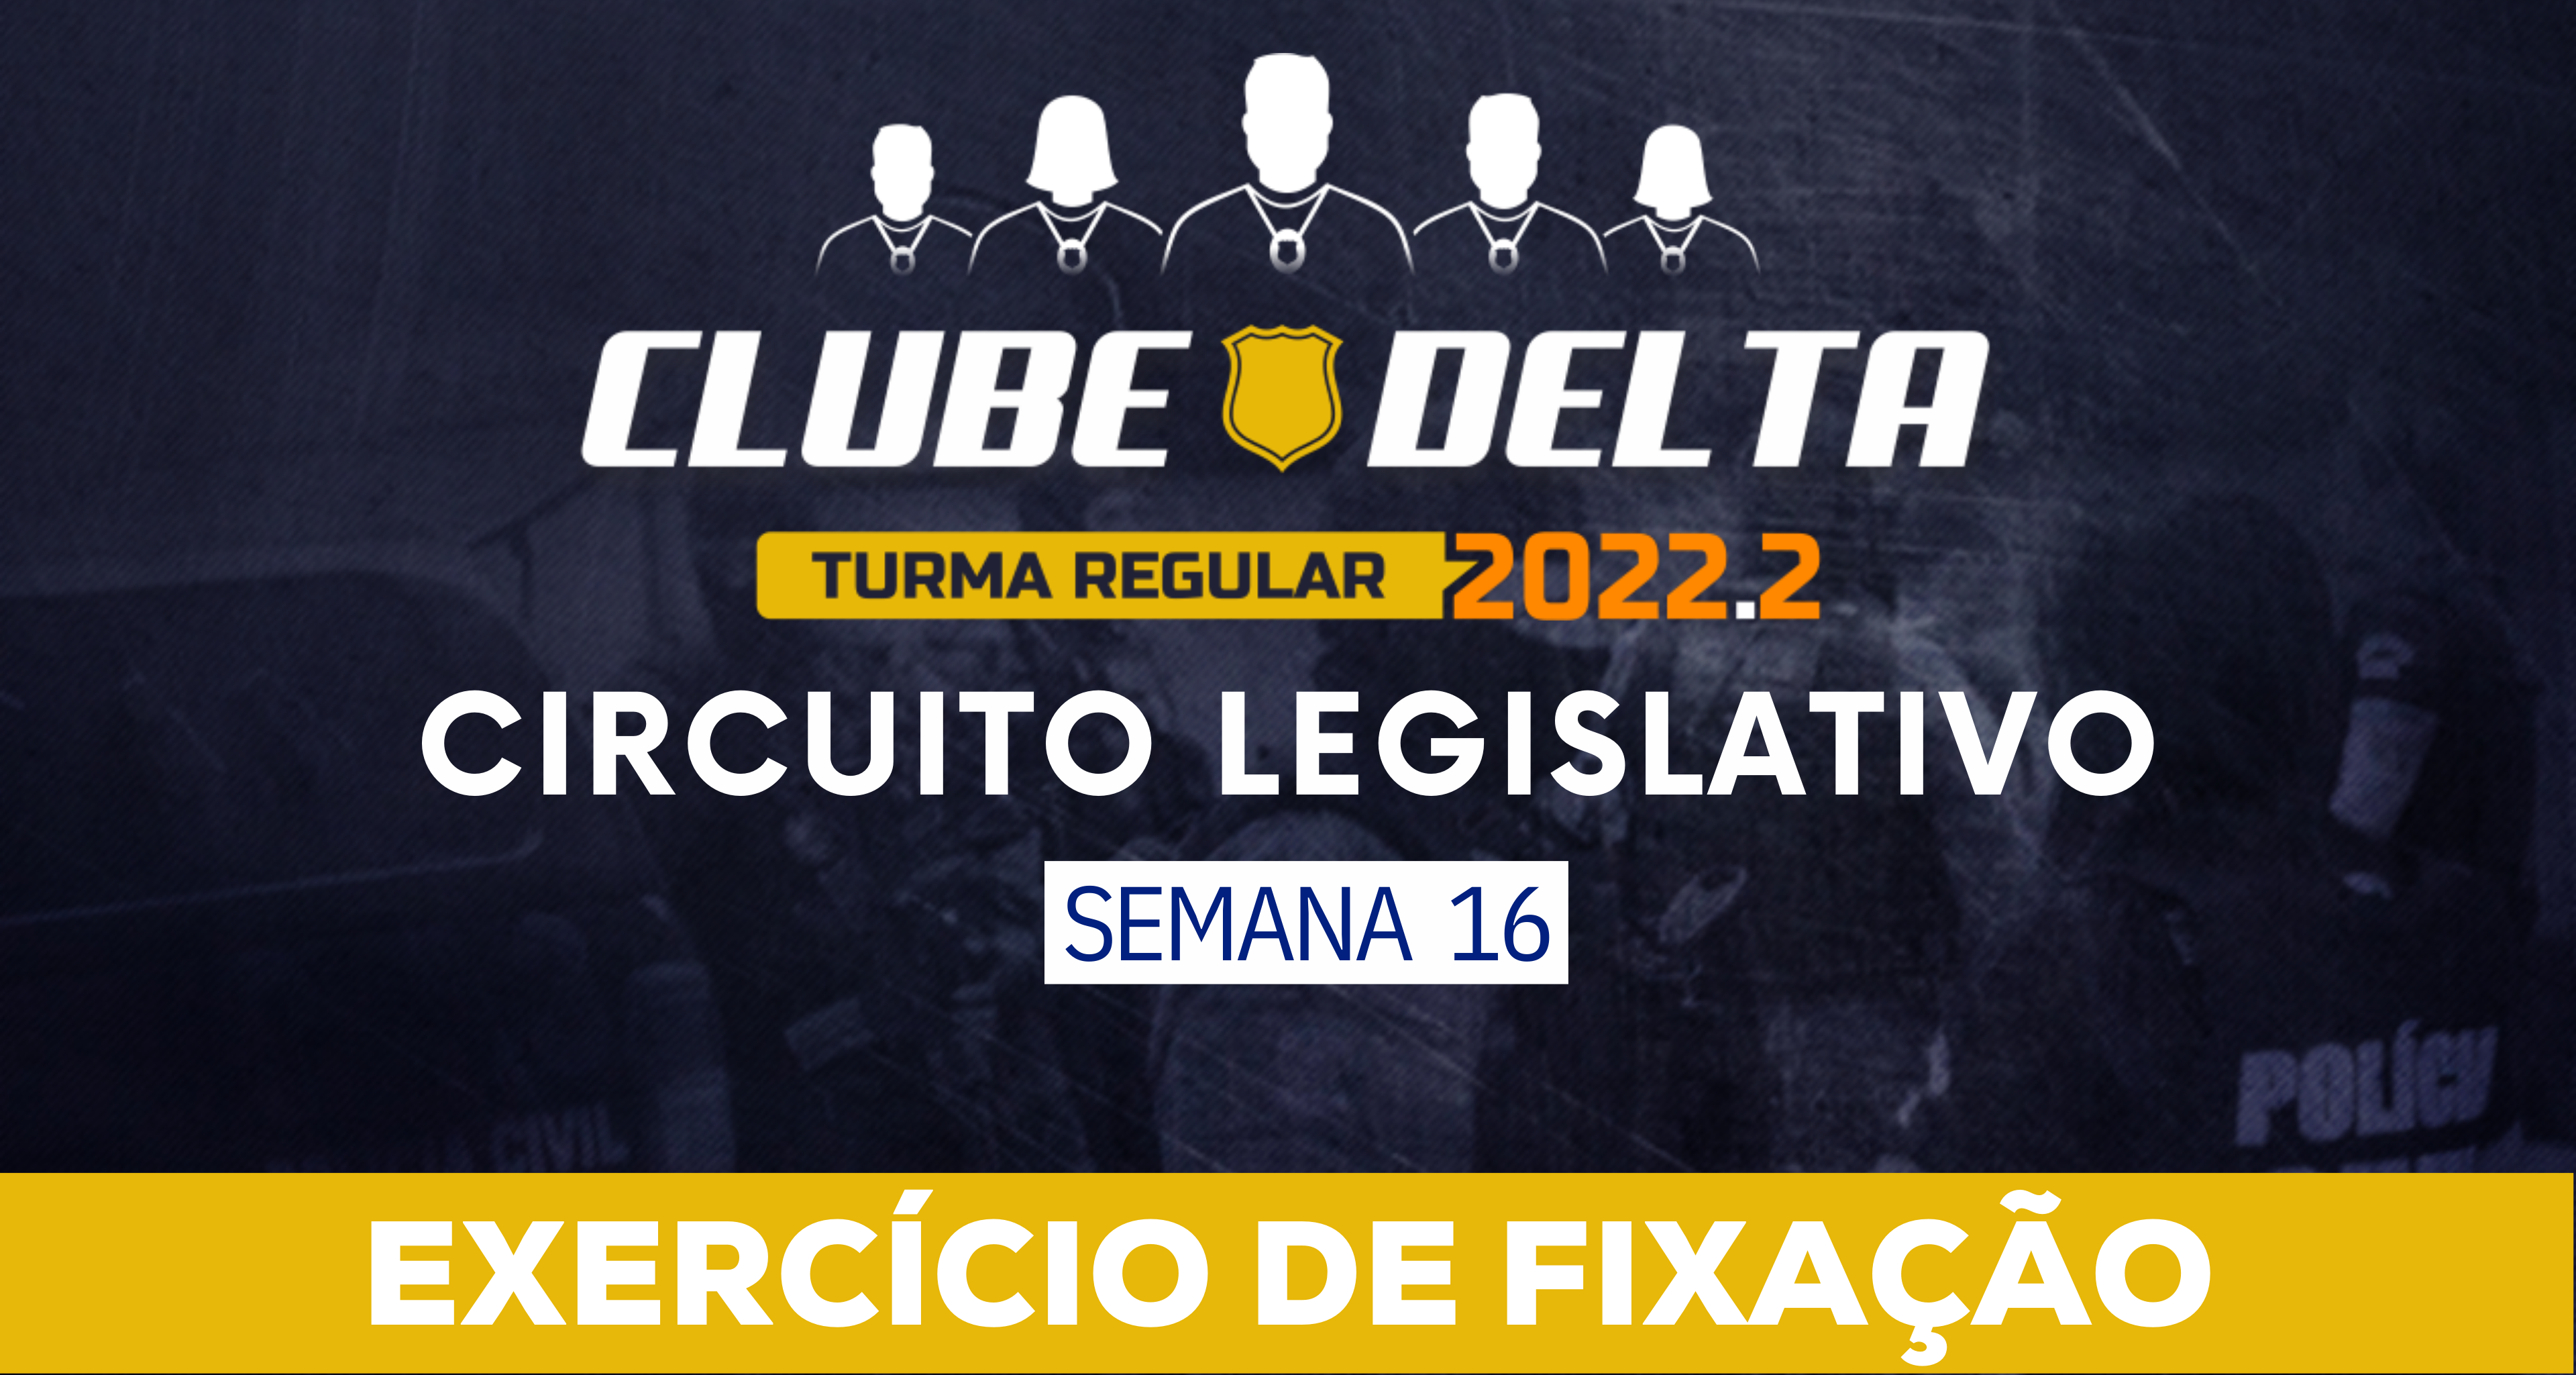 Circuito Legislativo 2022.2 (Clube Delta - Semana 16)